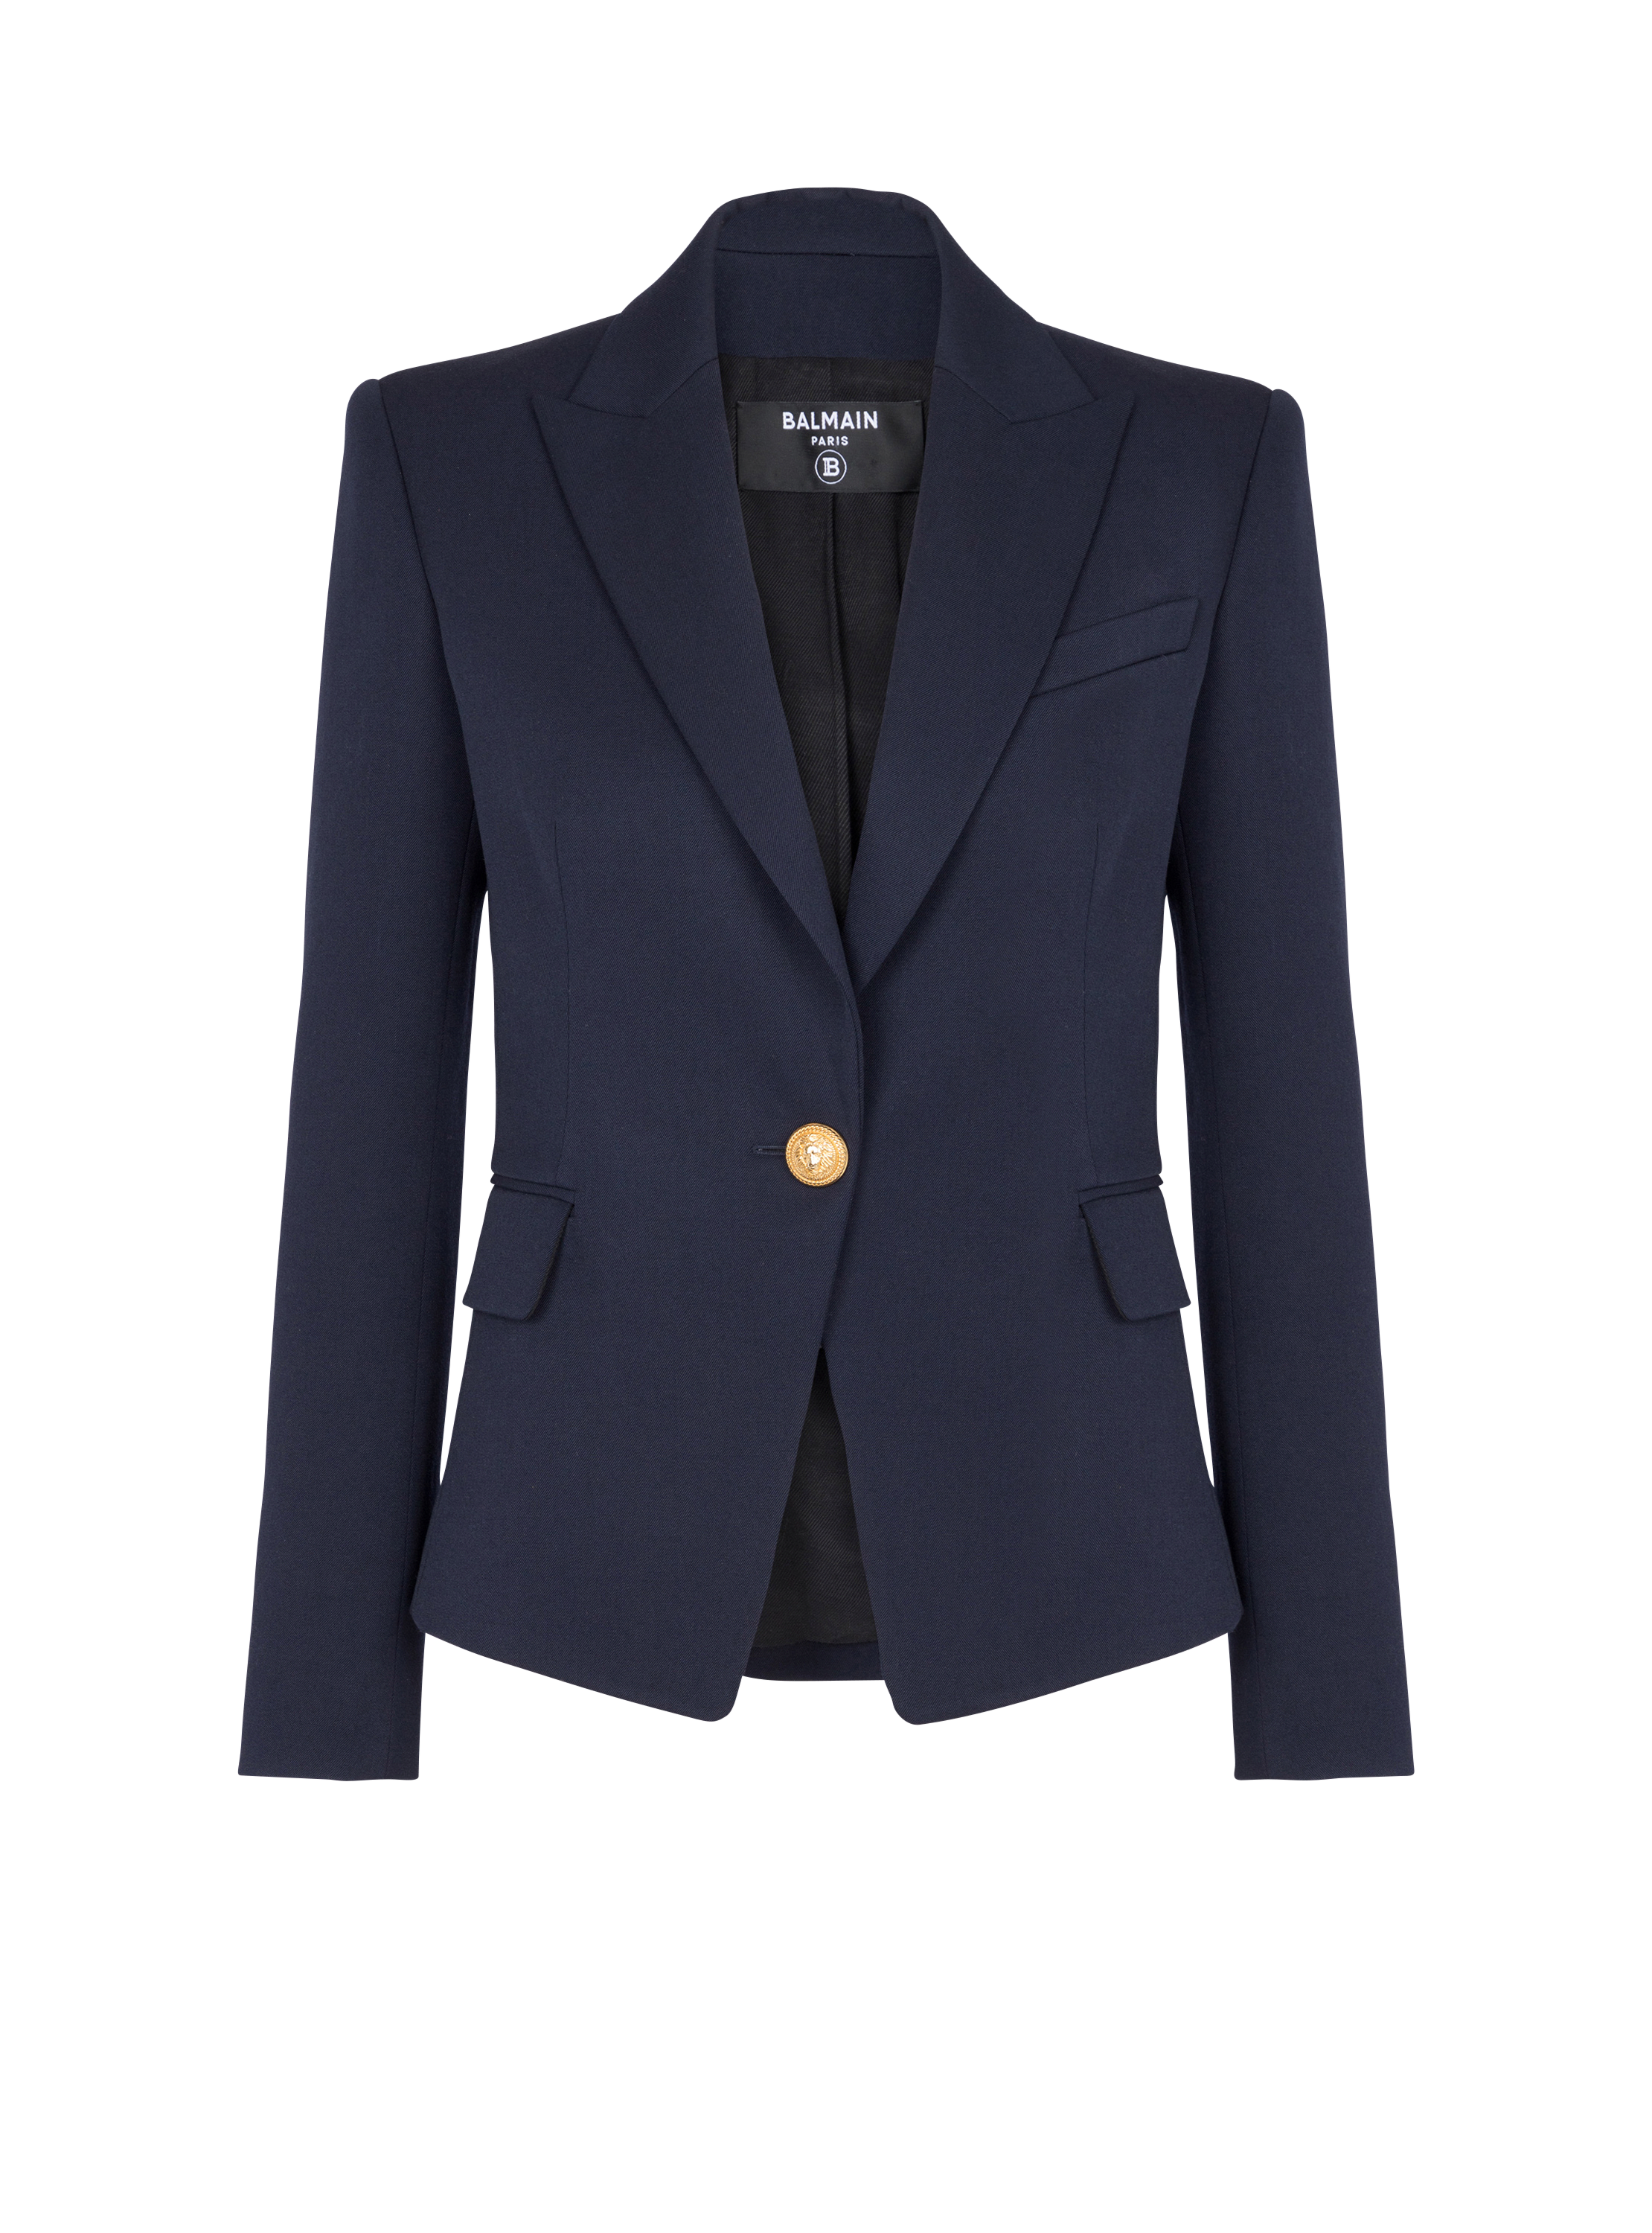 One-button wool blazer, navy, hi-res